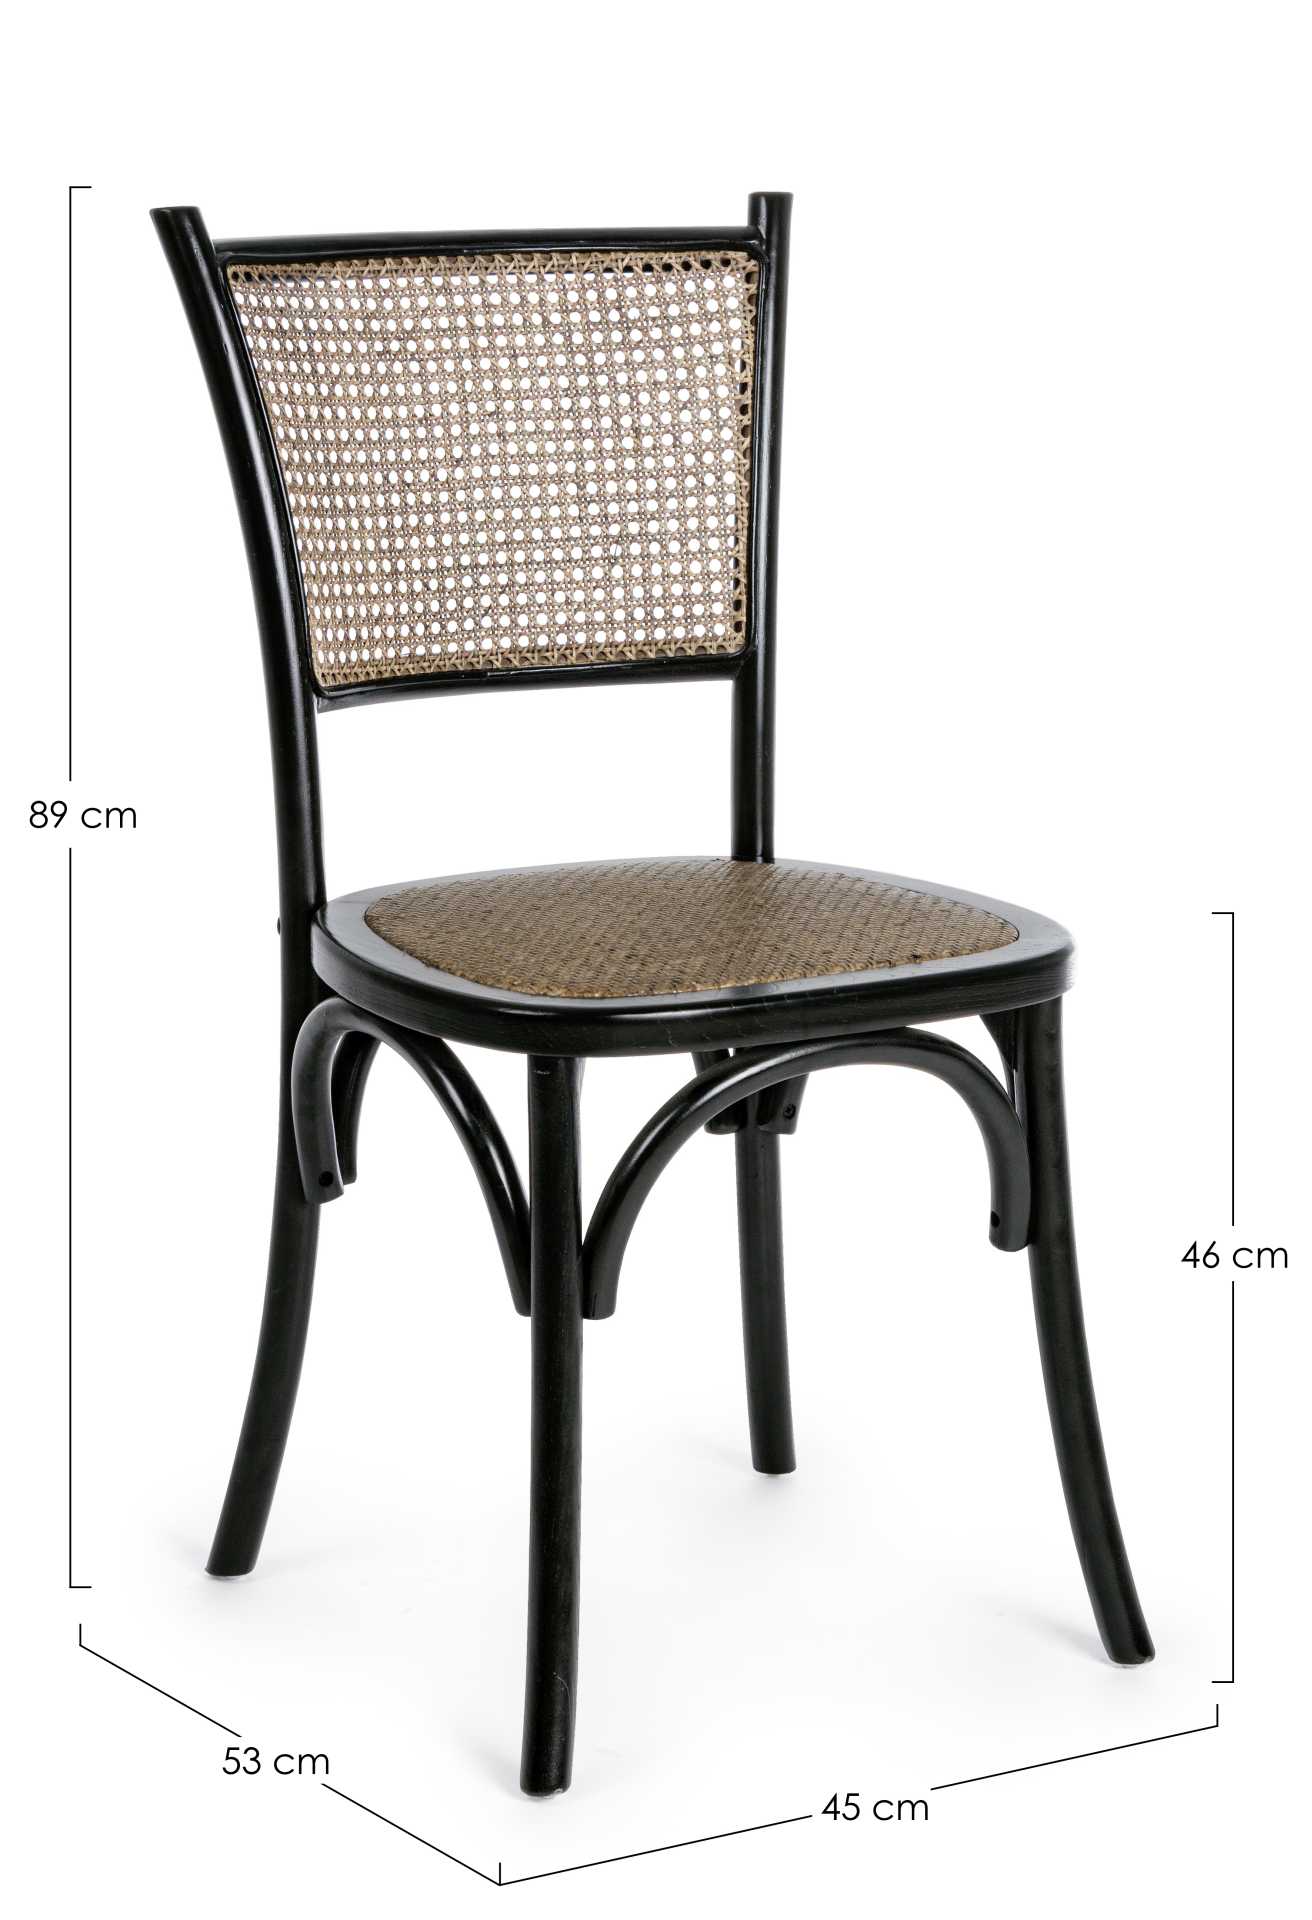 Der Stuhl Carrel überzeugt mit seinem klassischen Design. Gefertigt wurde der Stuhl aus Ulmenholz, welches einen schwarzen Farbton besitzt. Die Sitz- und Rückenfläche sind aus Rattan. Die Sitzhöhe beträgt 46 cm.